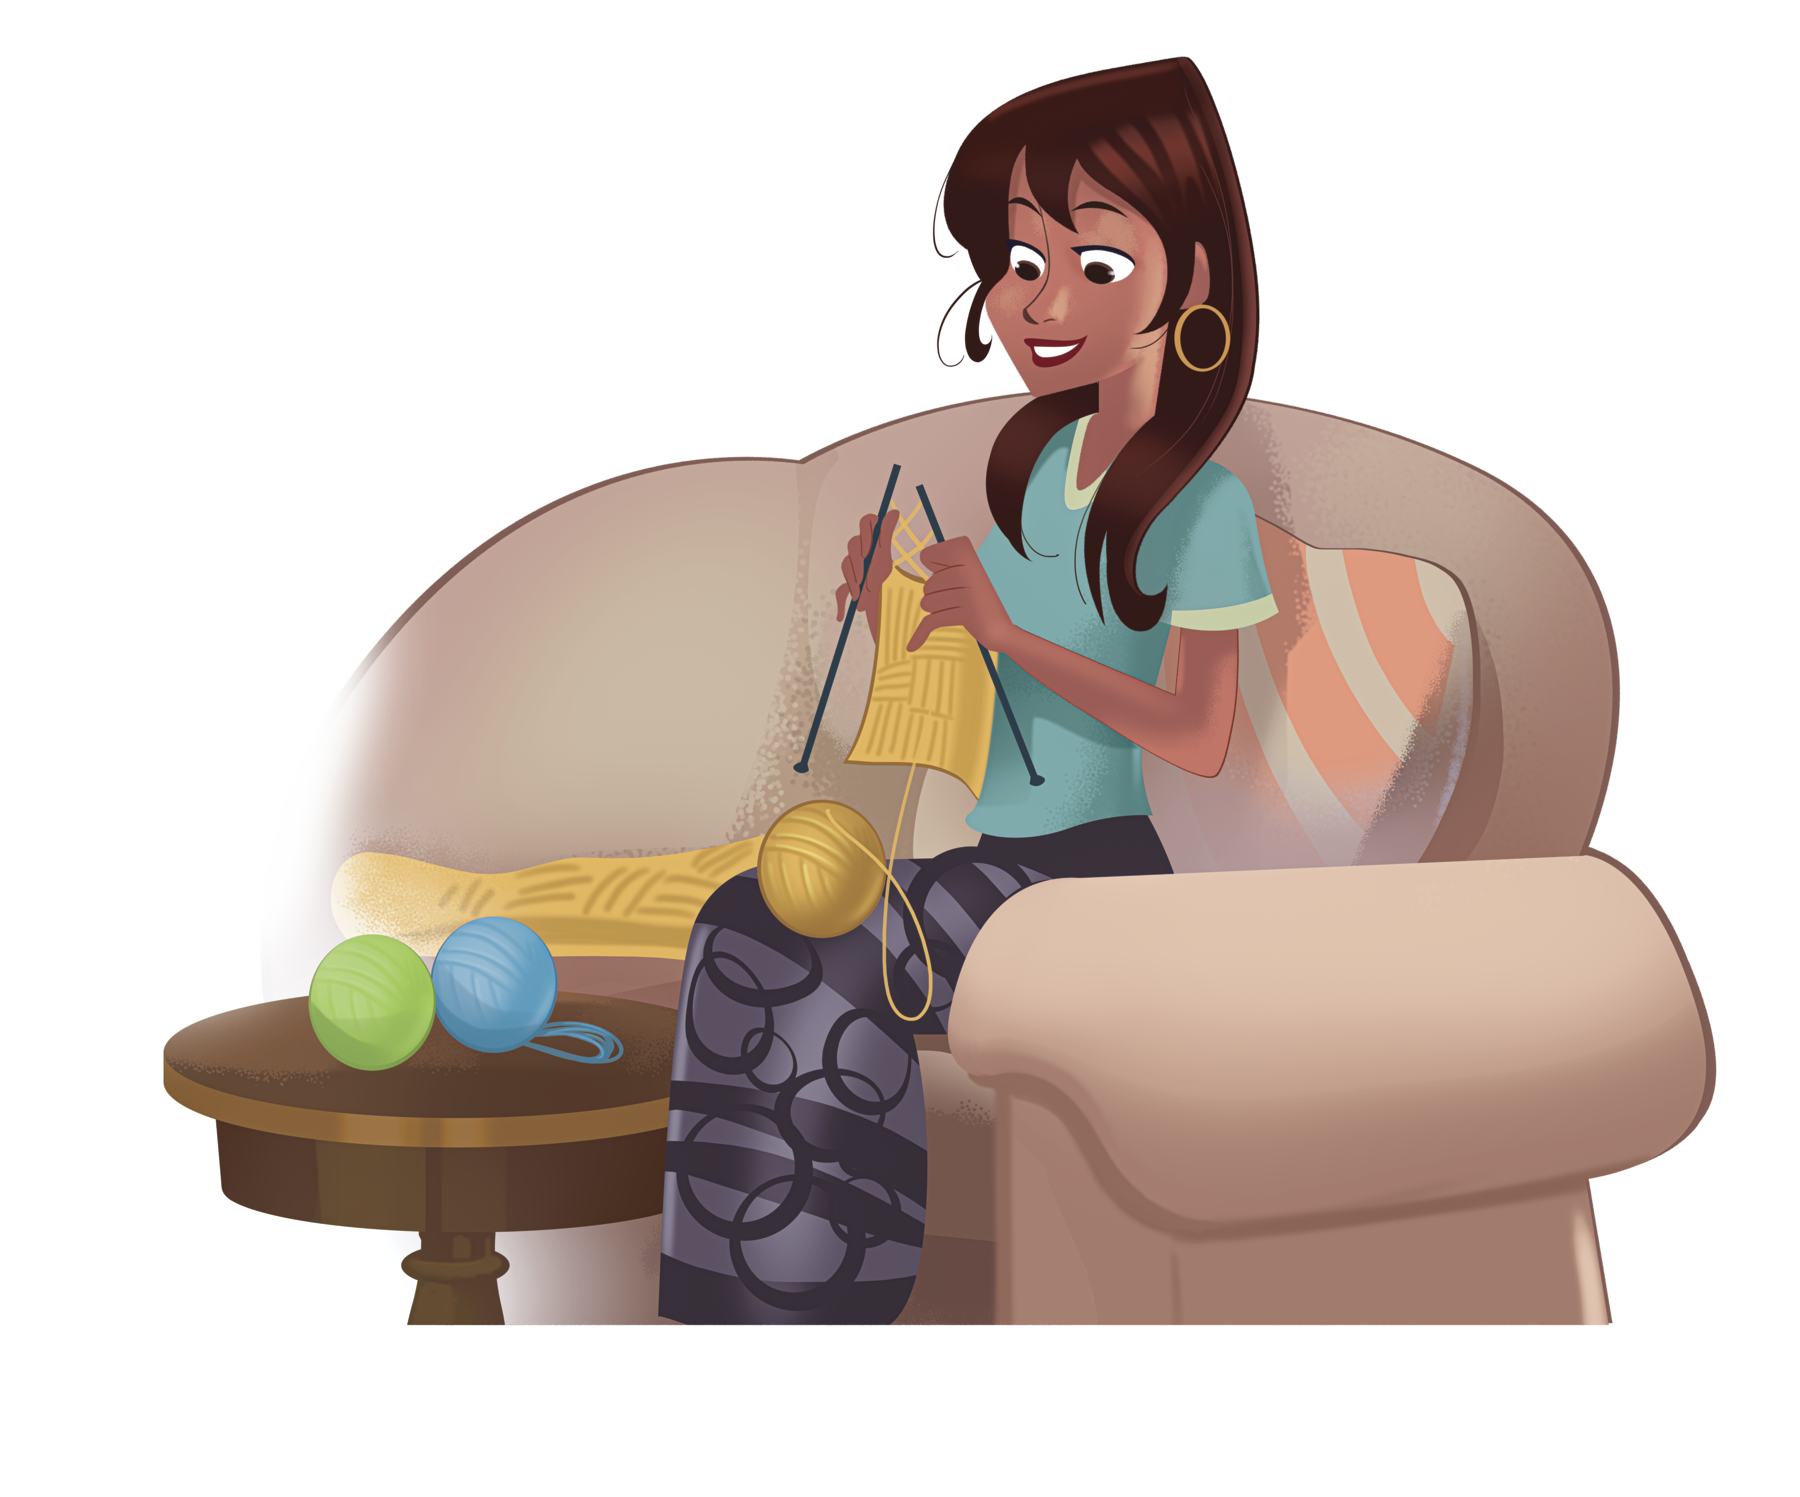 Ilustração. Mulher de cabelo castanho, camiseta verde e saia escura. Ela está sentada em um sofá fazendo tricô. Ao lado, mesa redonda com novelos de lã coloridas.